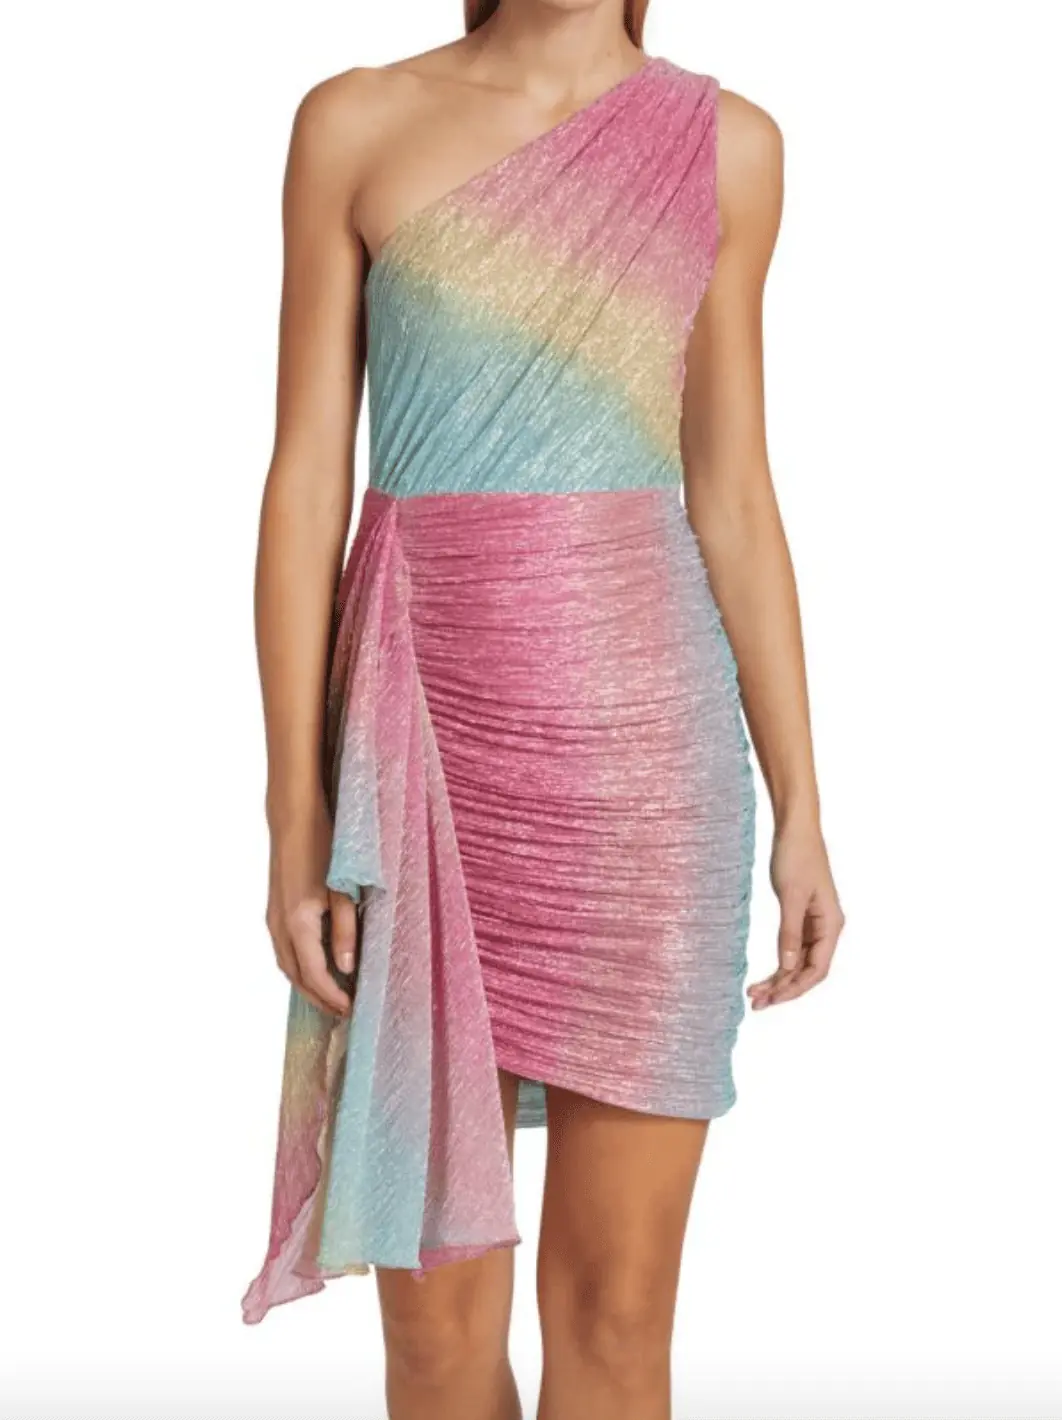 Jennifer Pedranti's Metallic Rainbow Confessional Dress